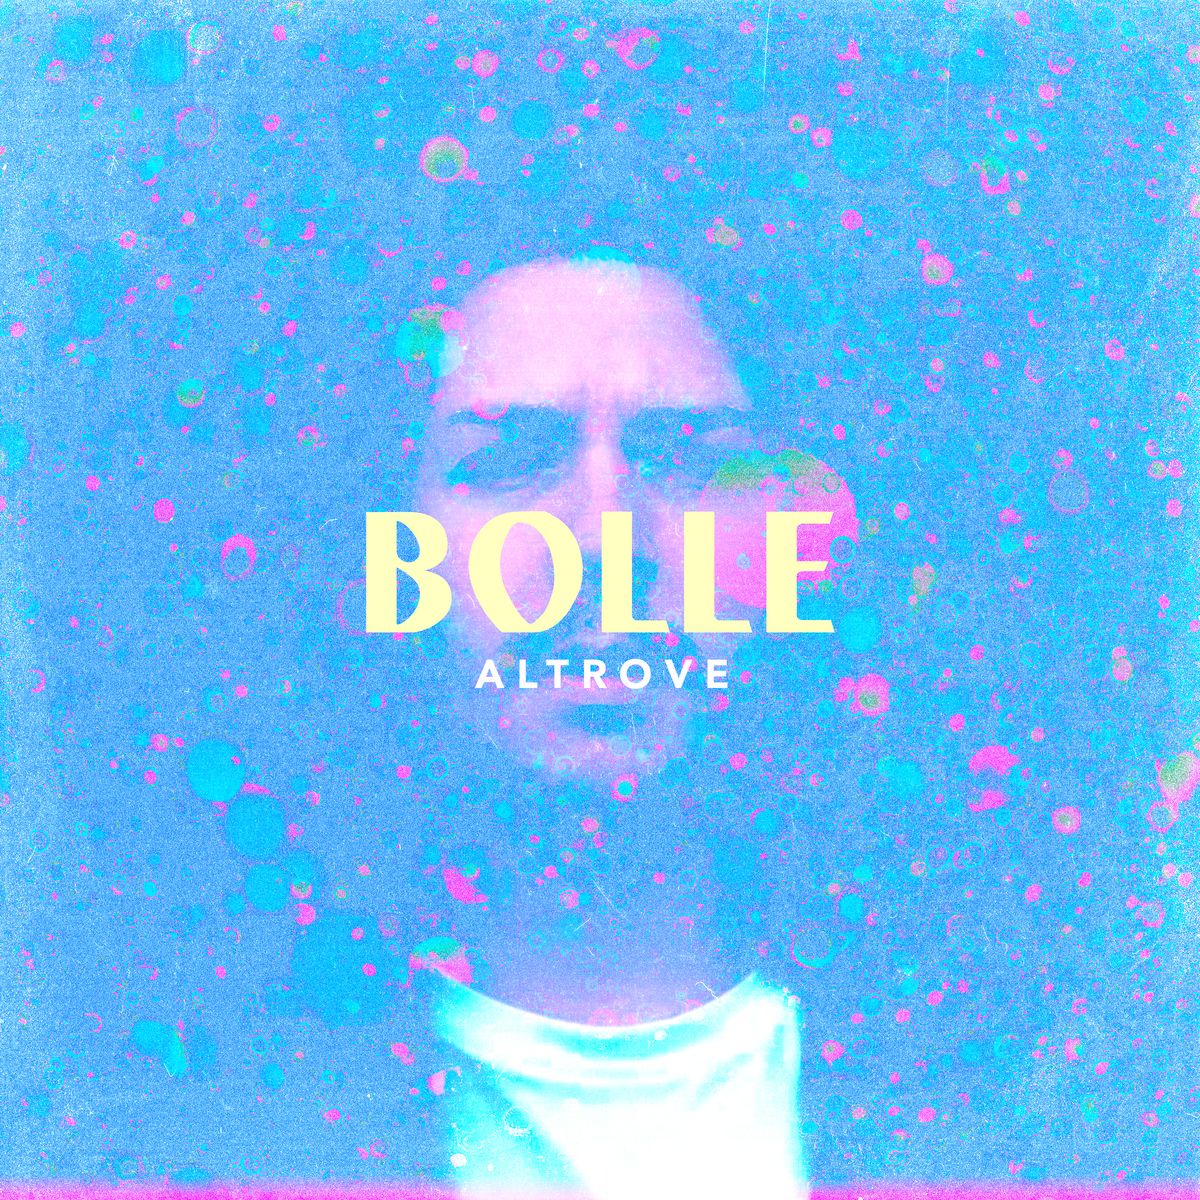 Ecco “Bolle”, il disco d’esordio di Altrove